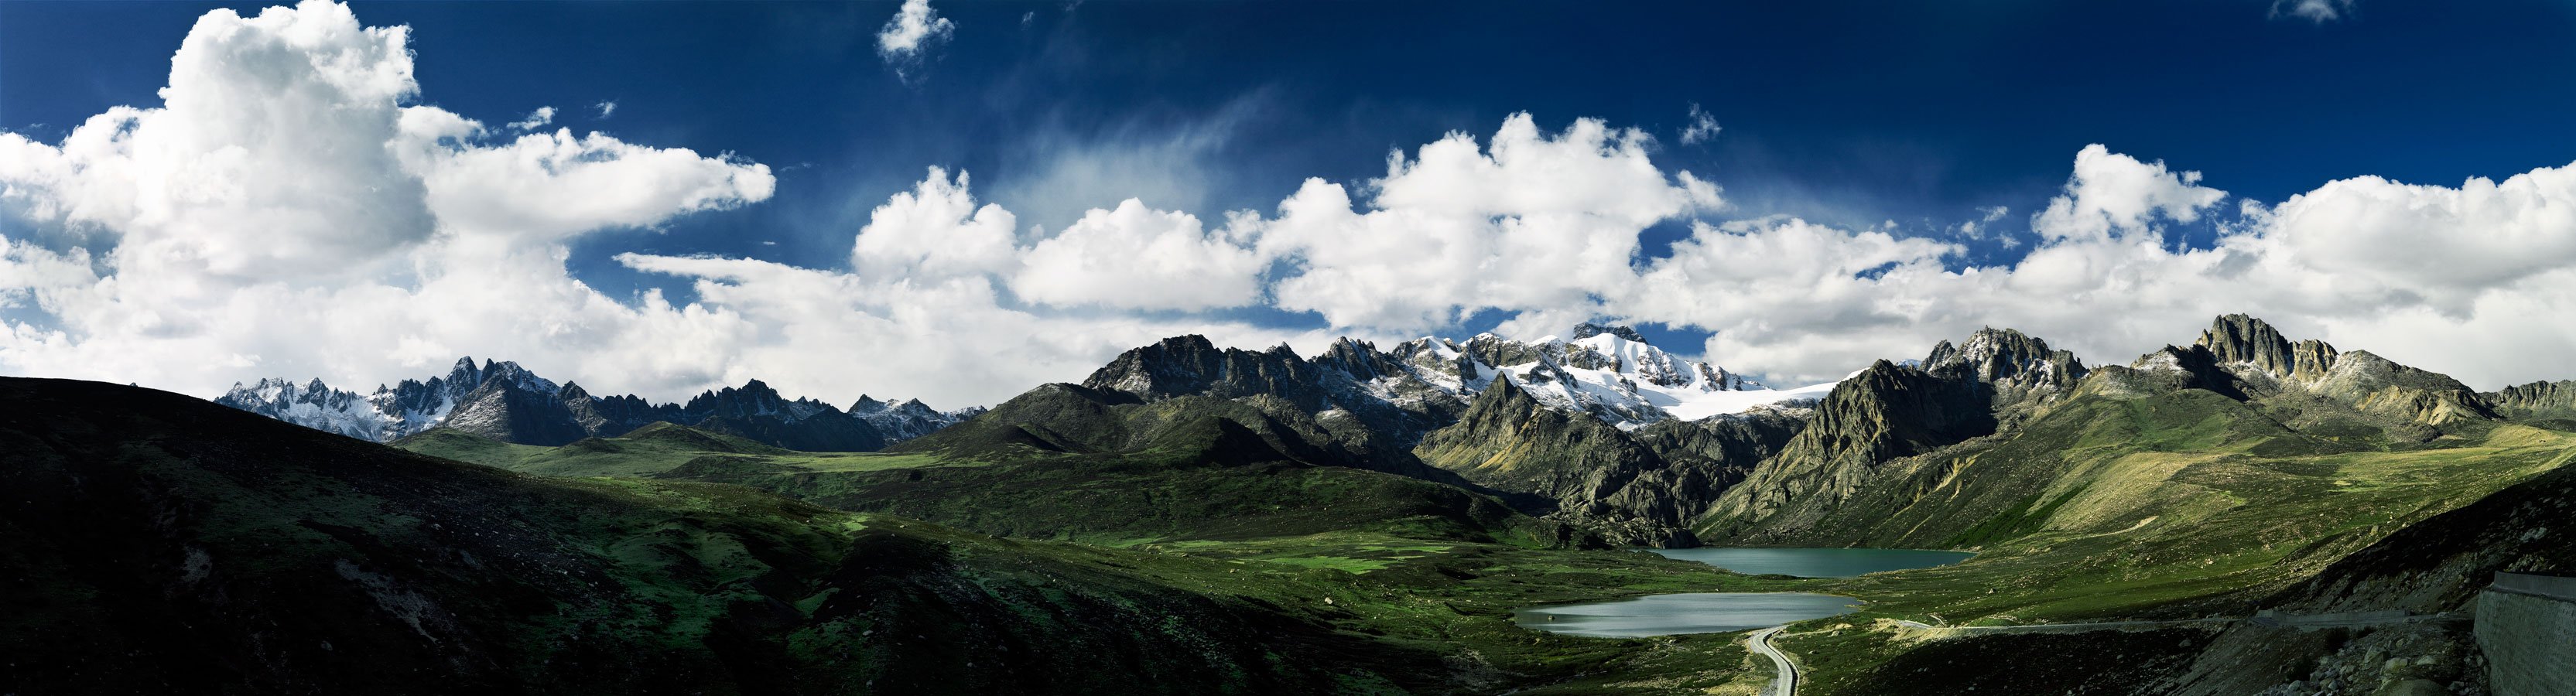 Горы Кавказа панорама